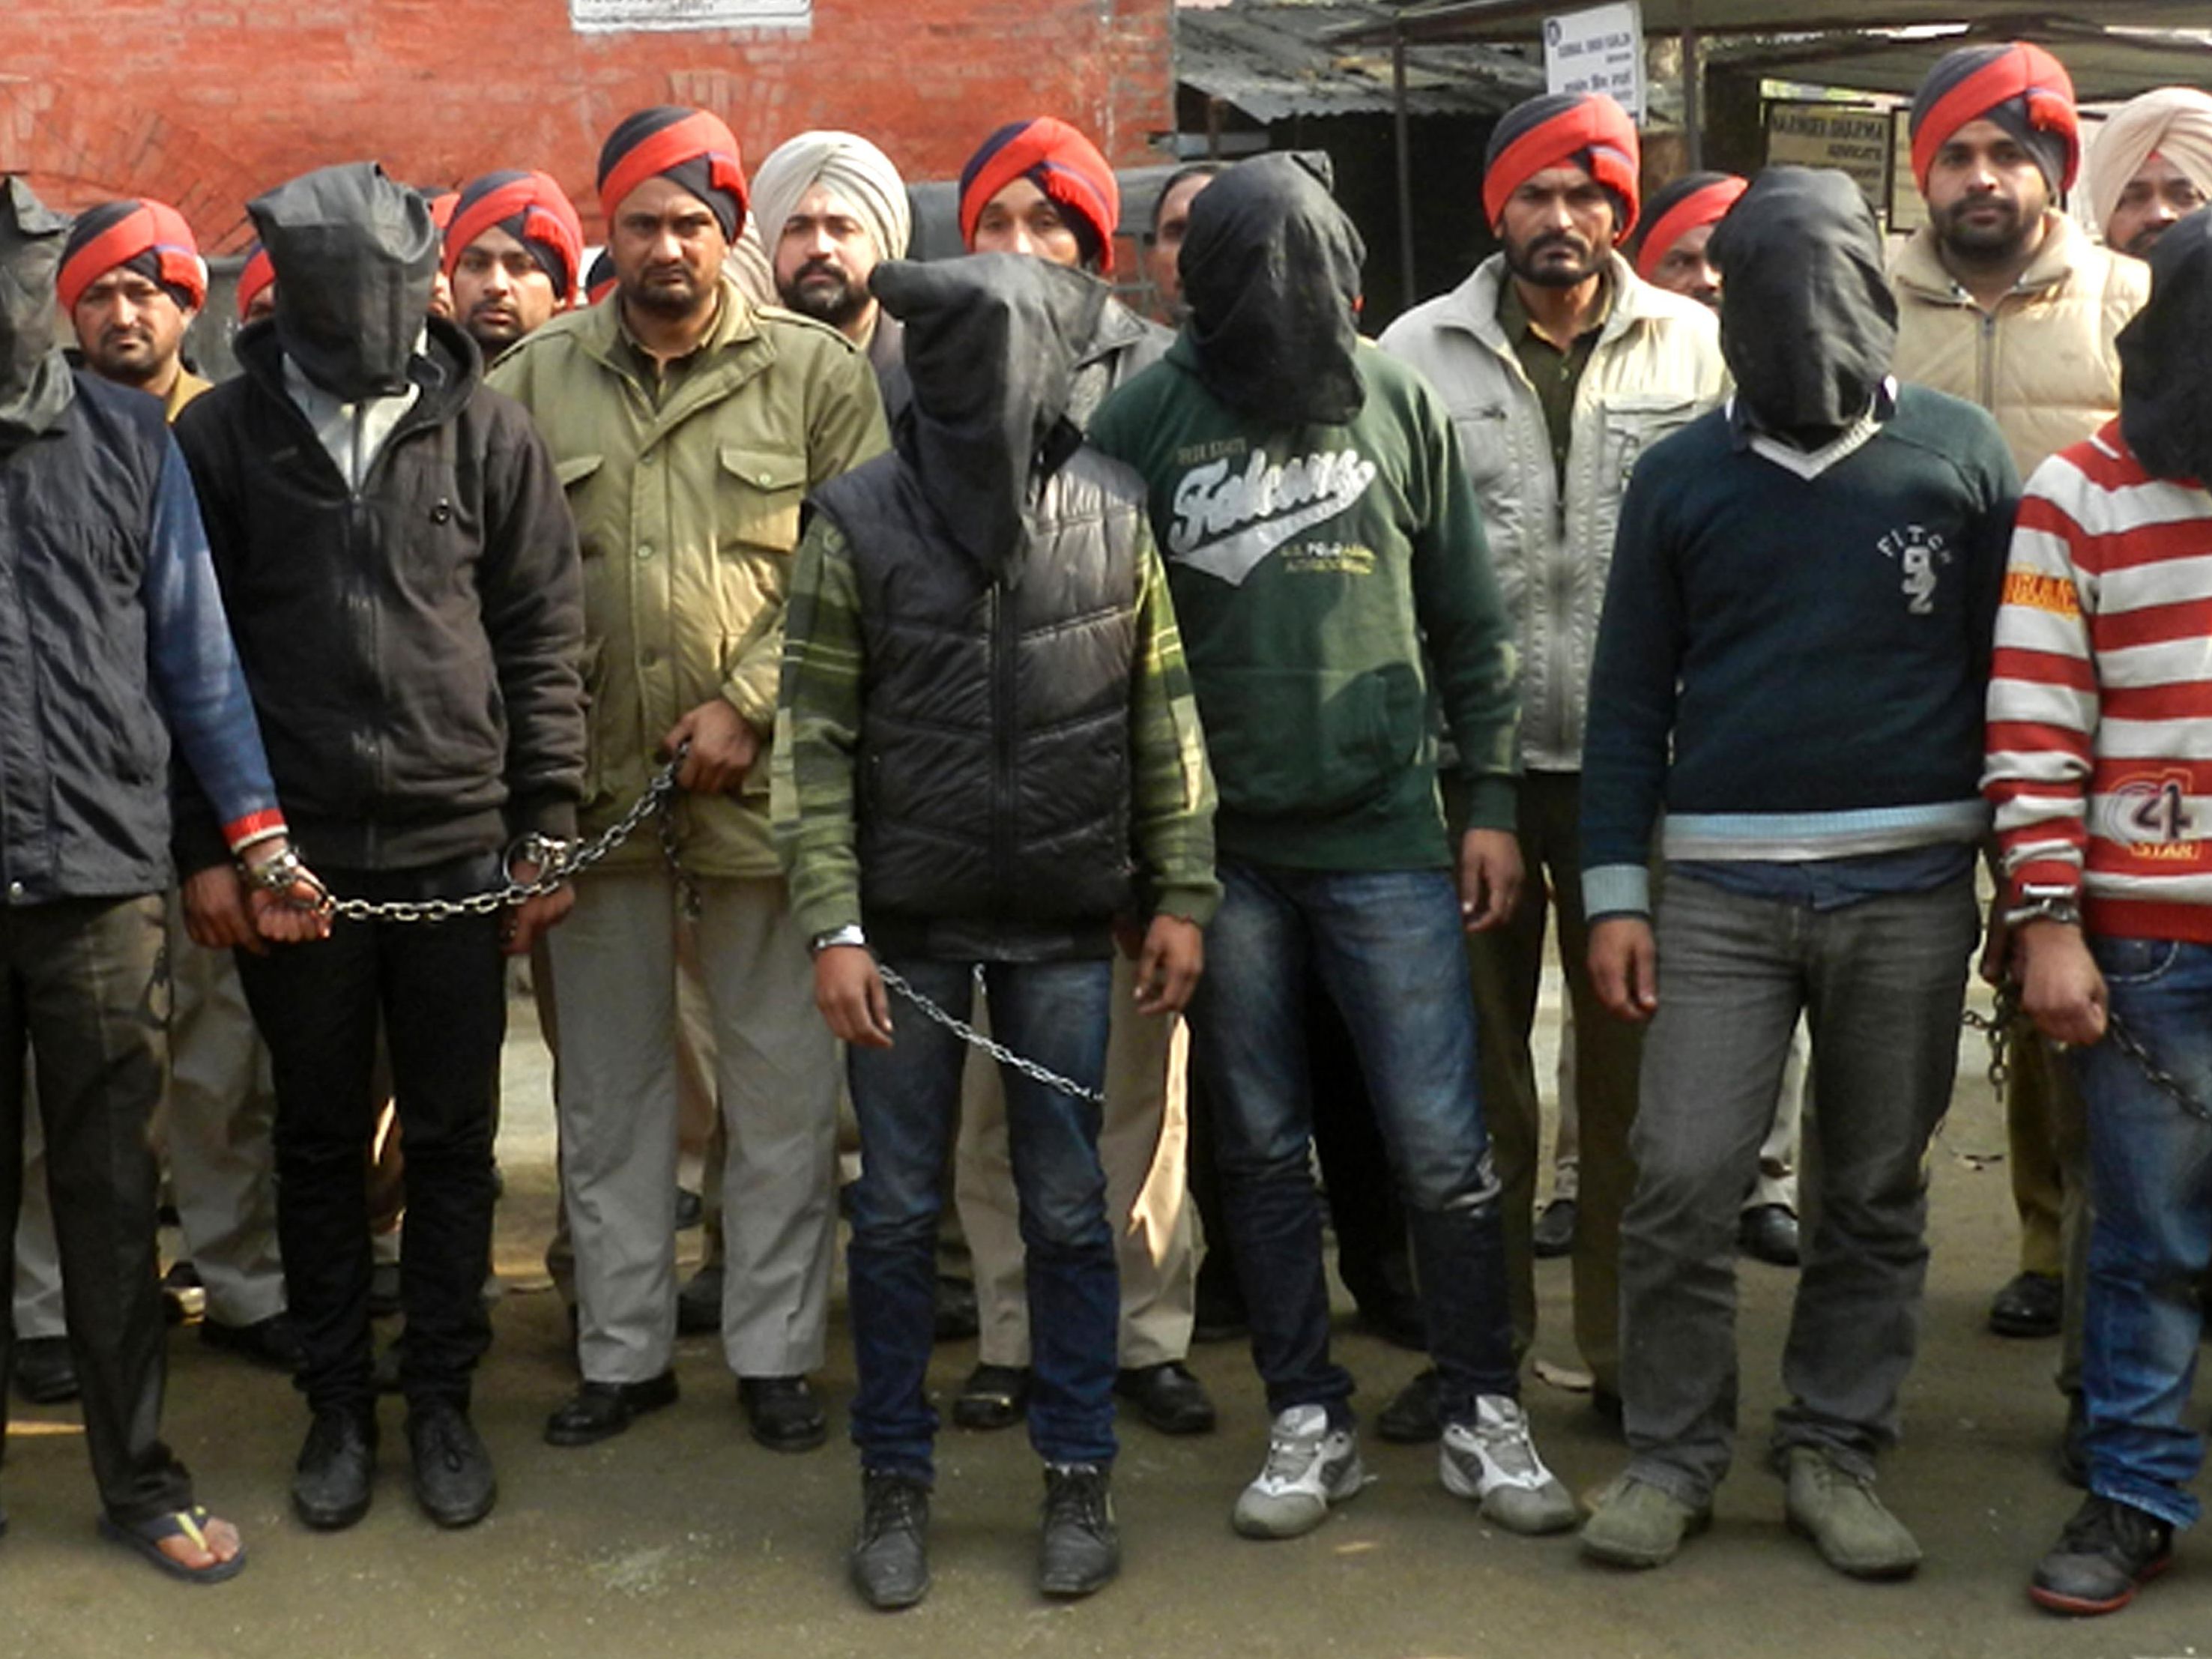 2952px x 2214px - Police: 7 men gang rape bus passenger in India | CNN